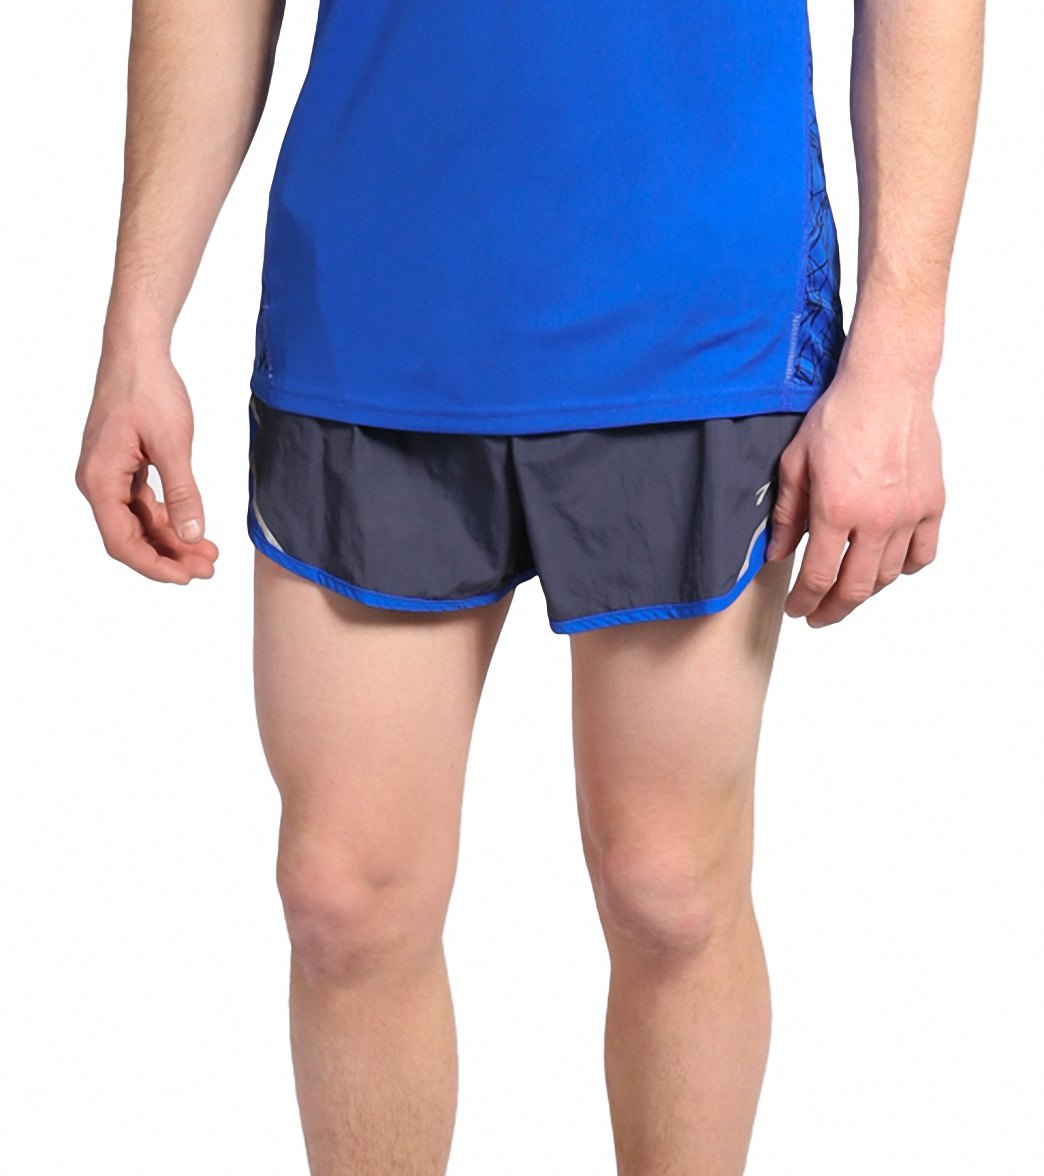 asics 3 inch running shorts